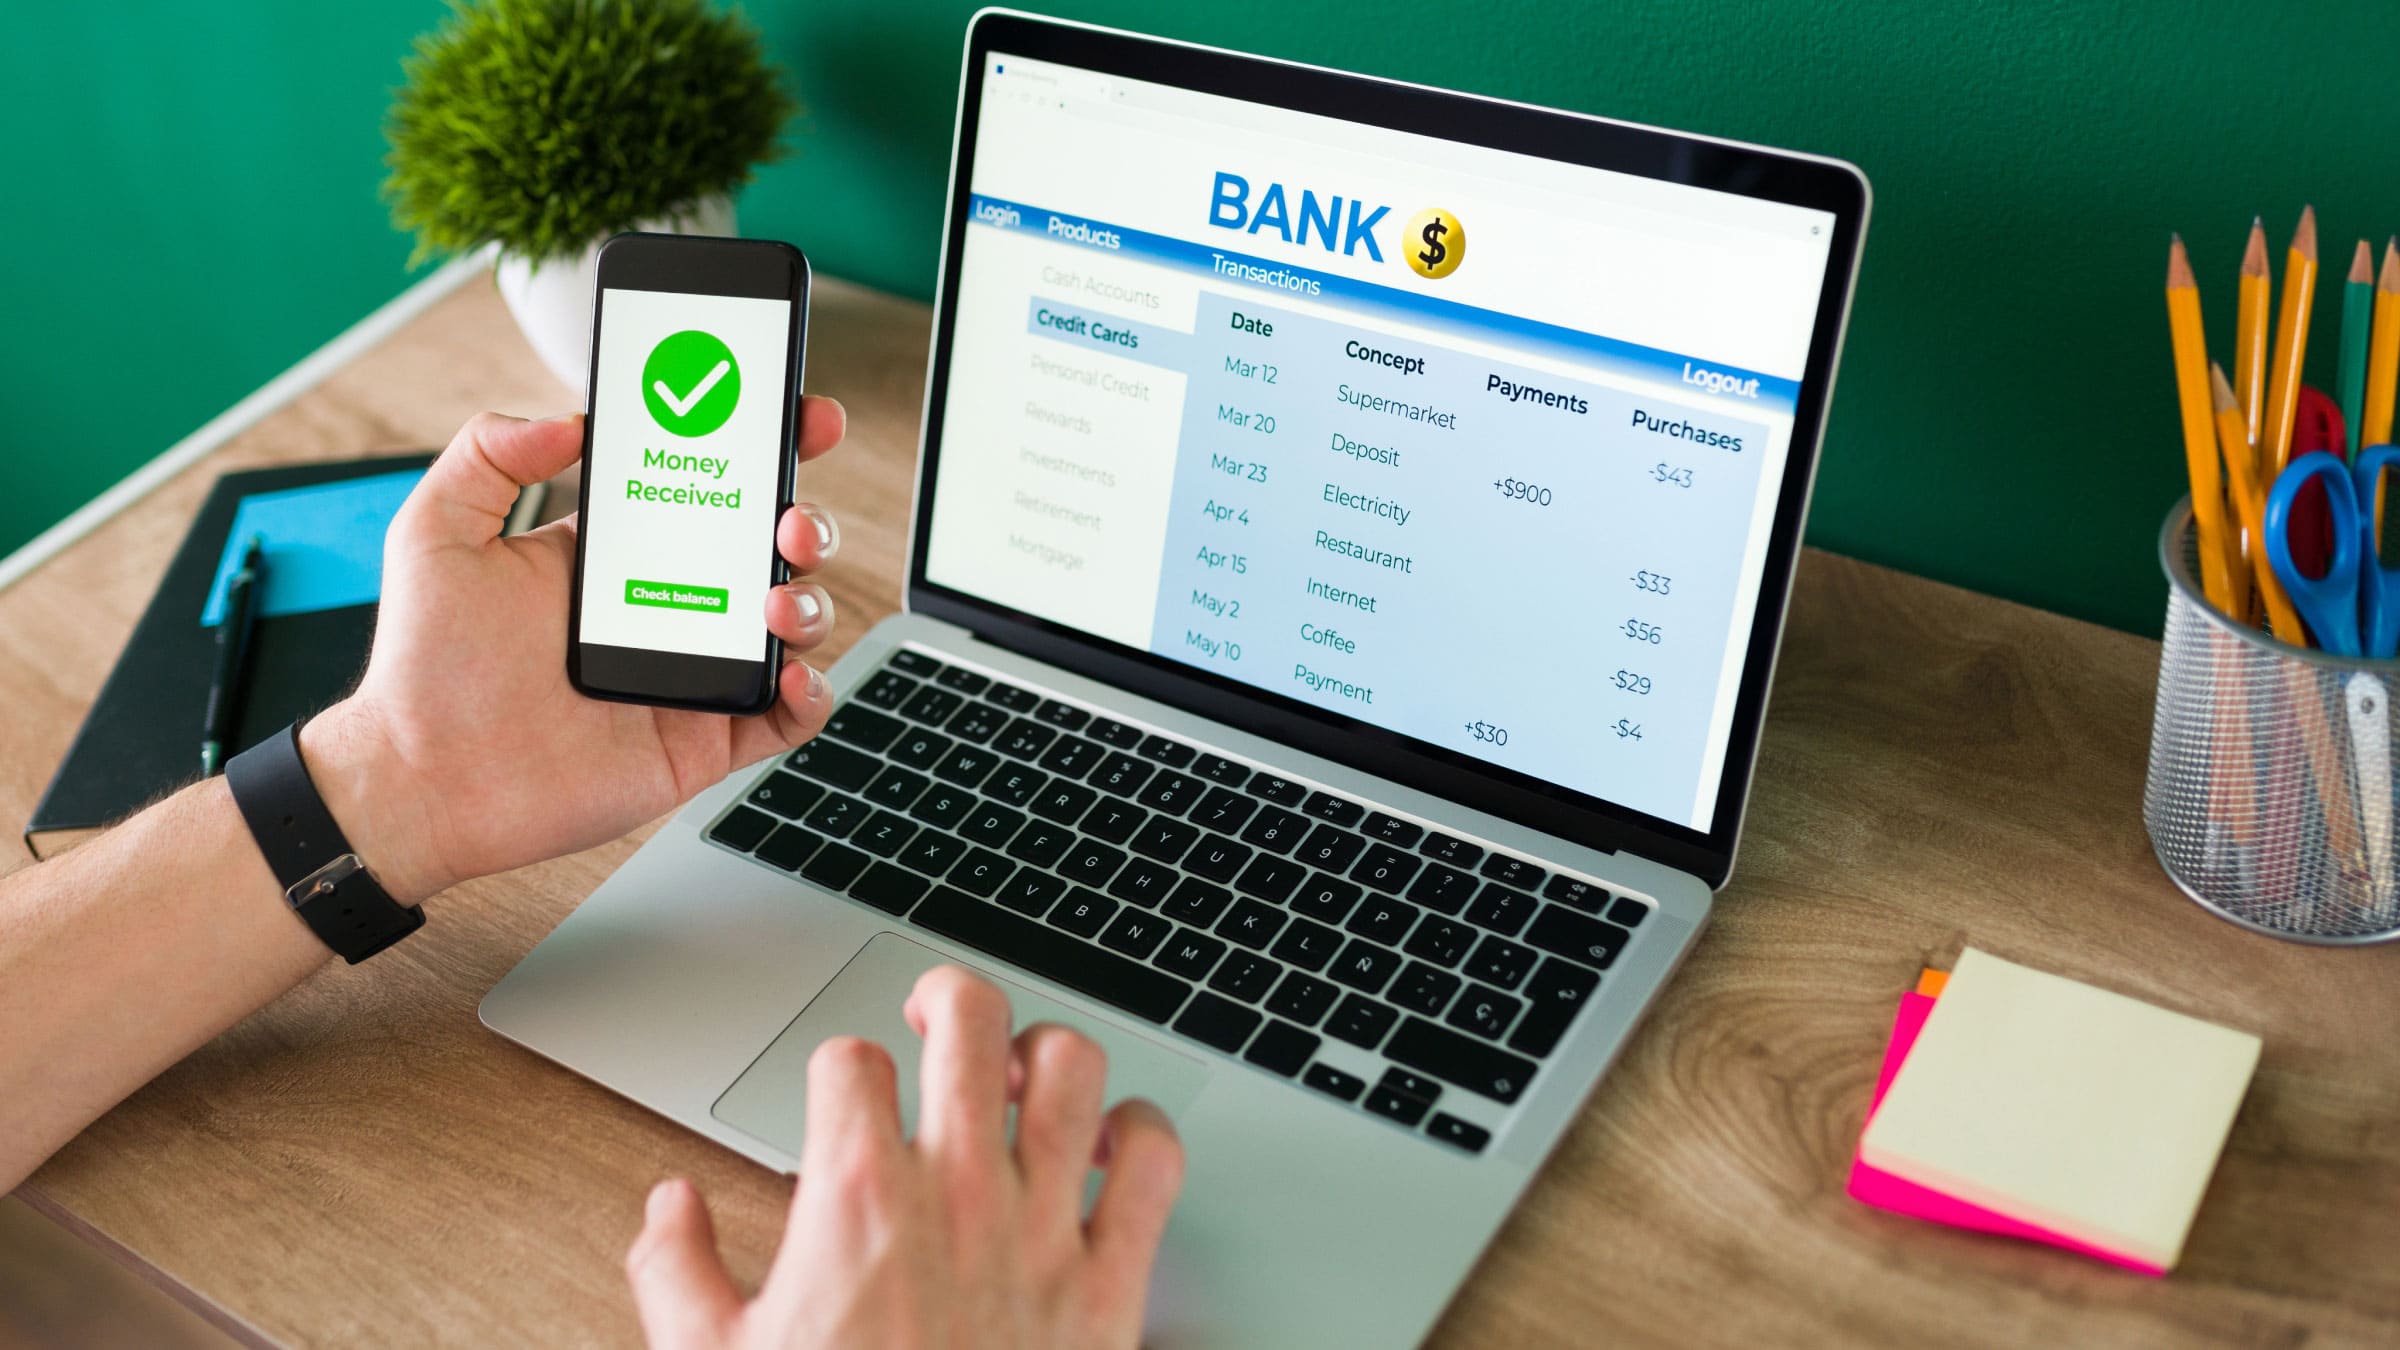 Чтобы было удобнее пользоваться сервисом банка, рекомендуется установить мобильный банкинг